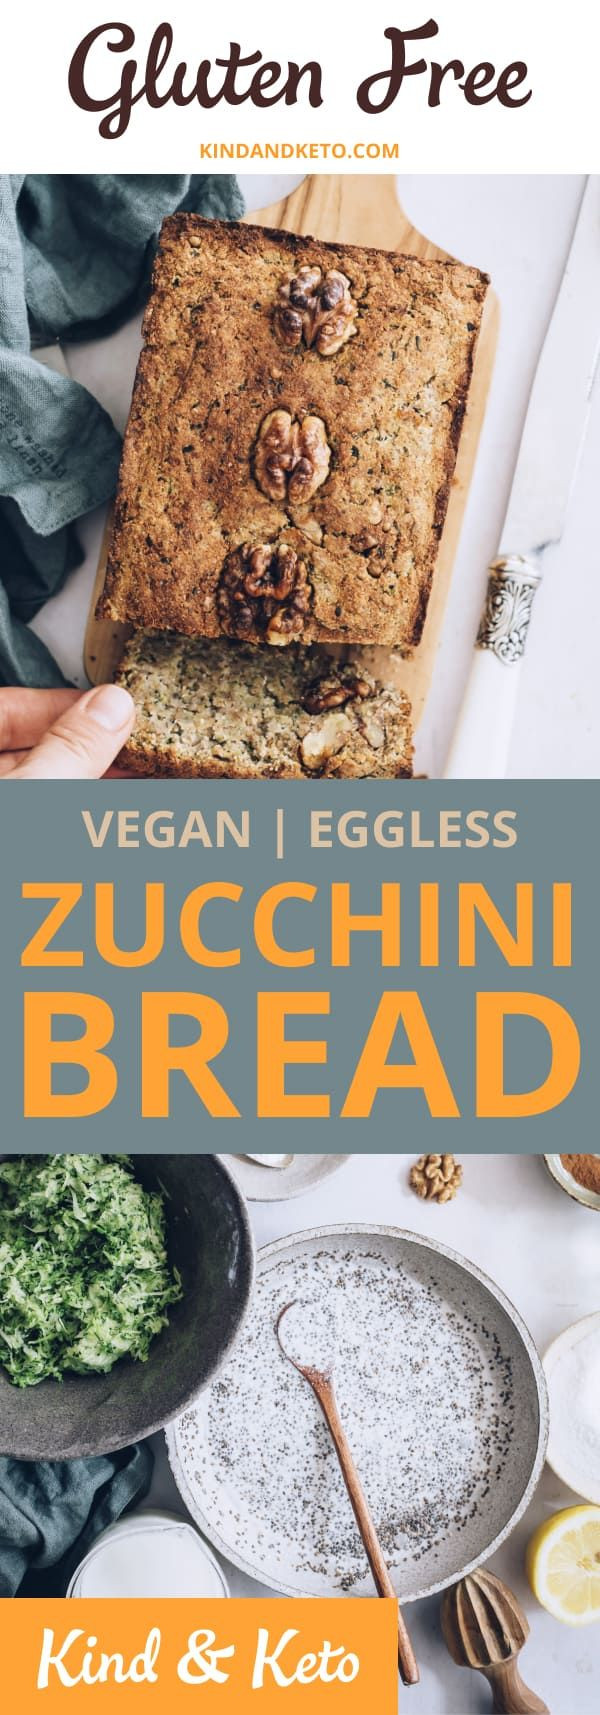 Easy Vegan Keto Bread
 Easy Bake Vegan Keto Zucchini Bread